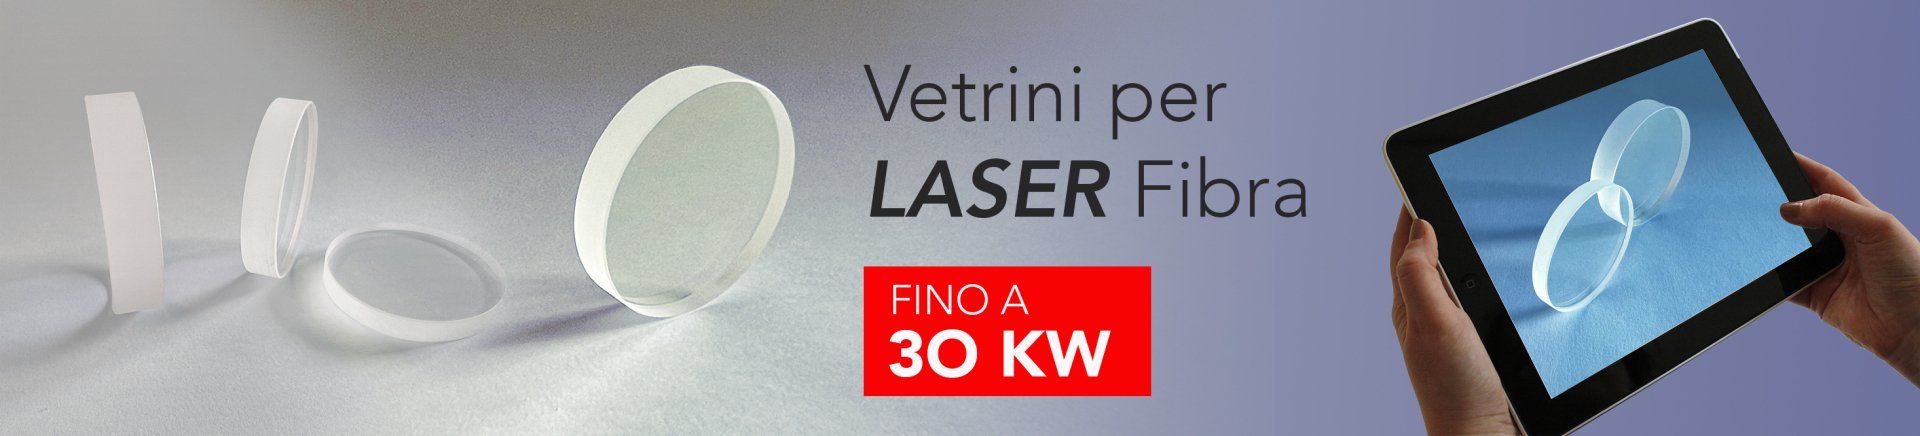 vetrini per testa laser